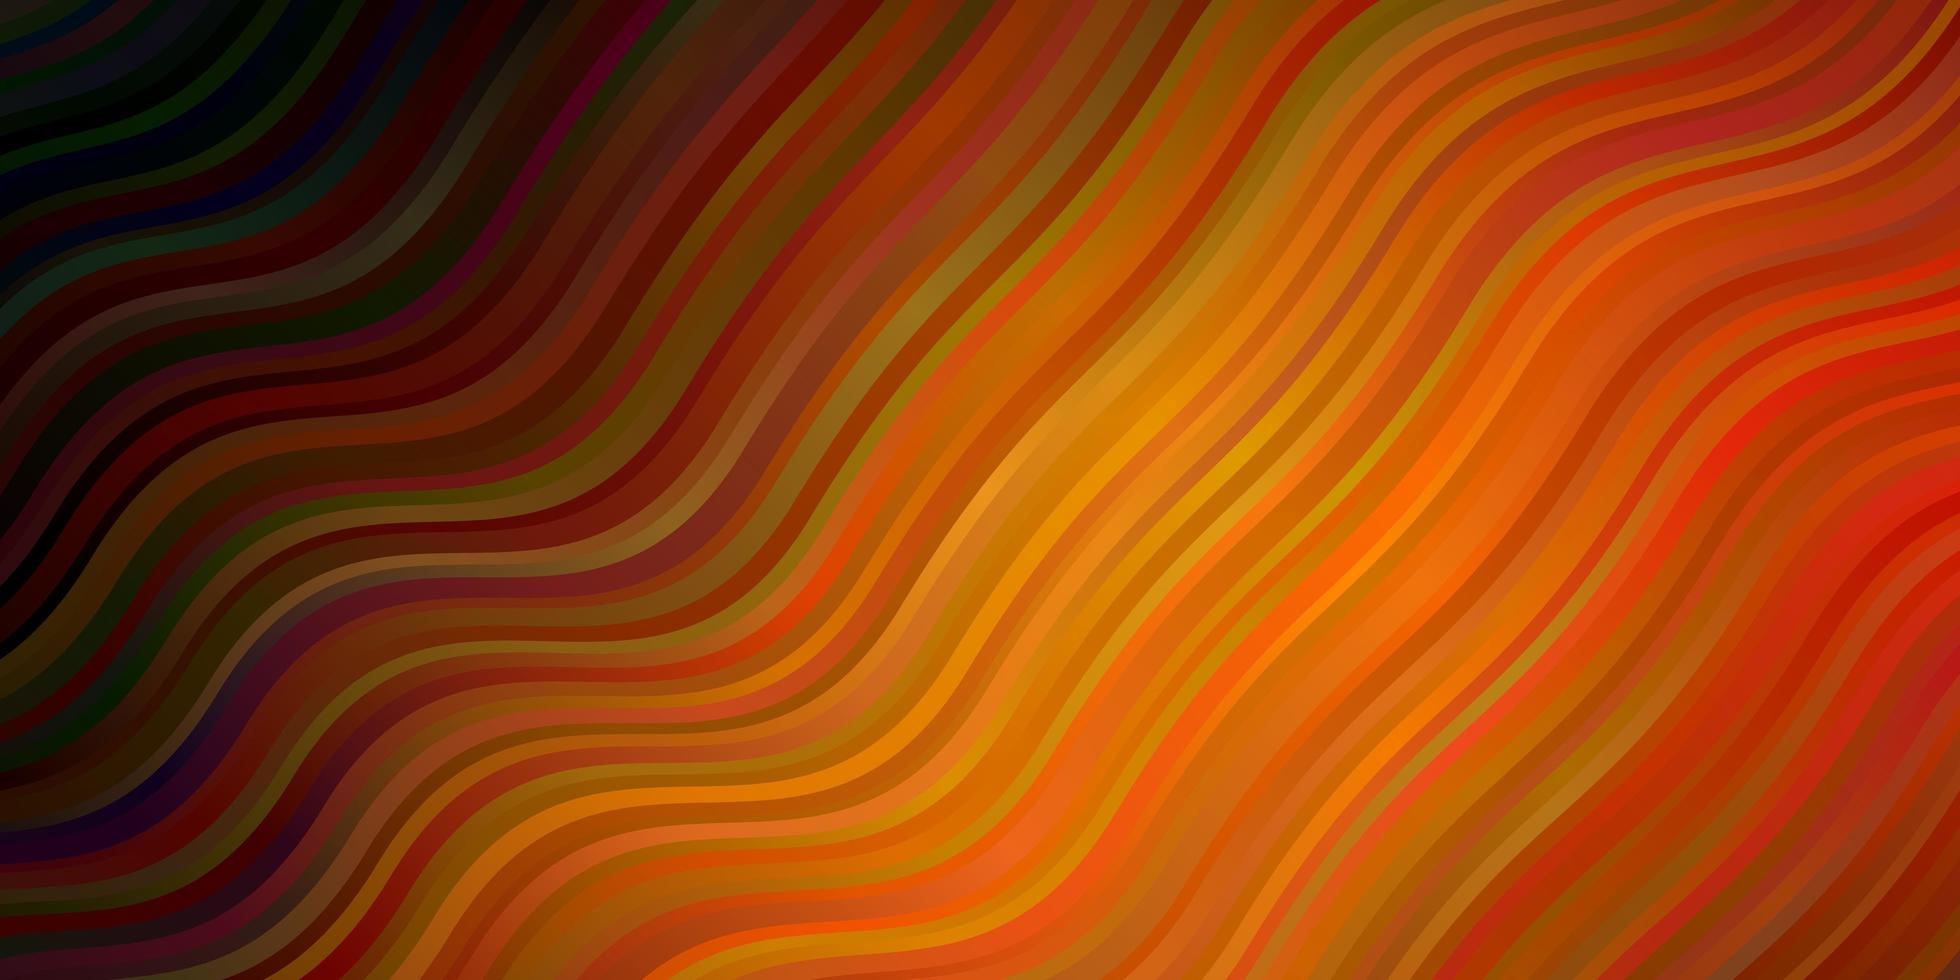 fundo laranja escuro do vetor com linhas dobradas. ilustração de gradiente em estilo simples com arcos. padrão para livretos de negócios, folhetos